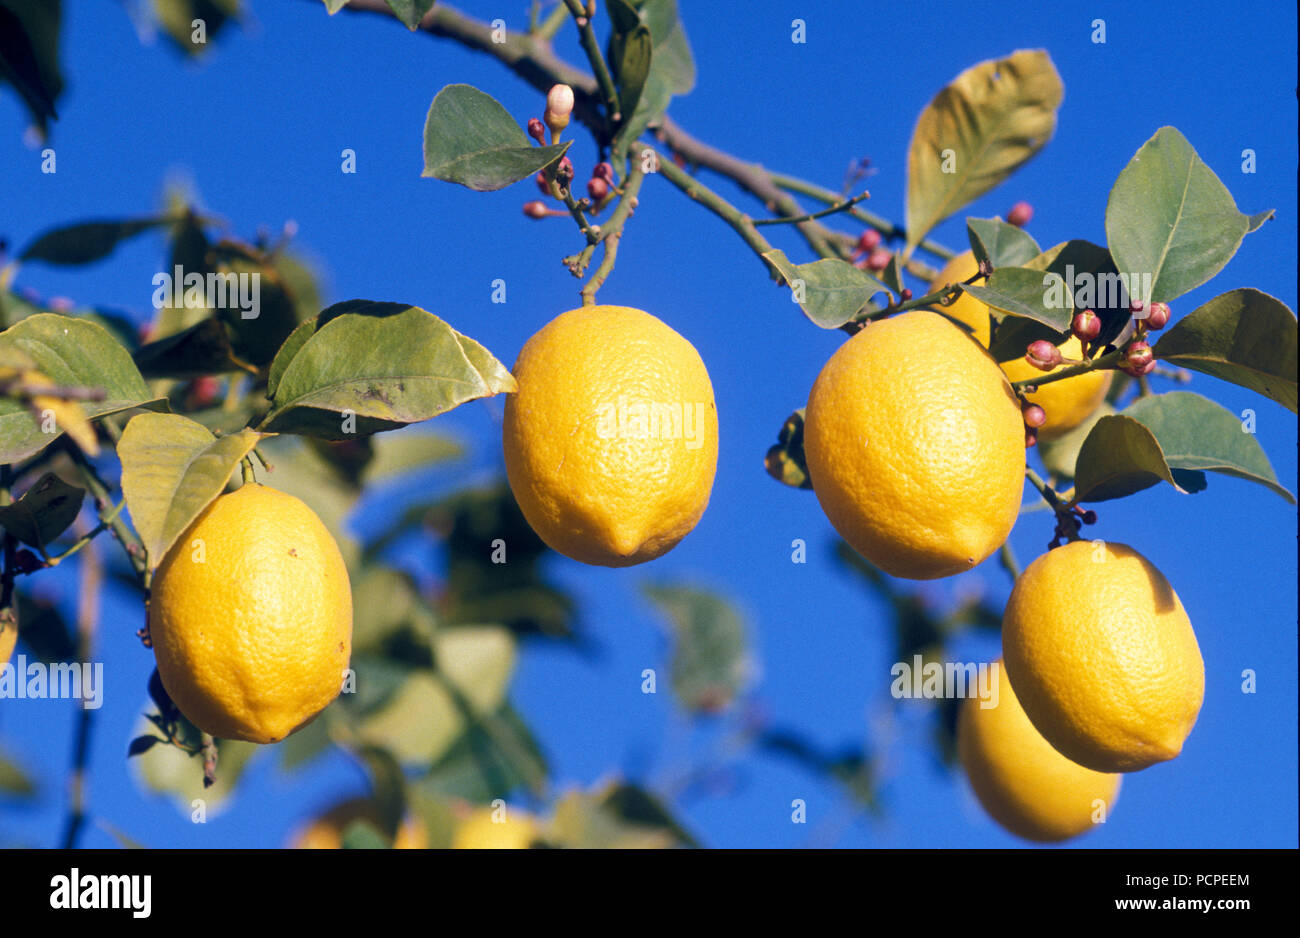 Citron - Lemon - Citrus limon Stock Photo